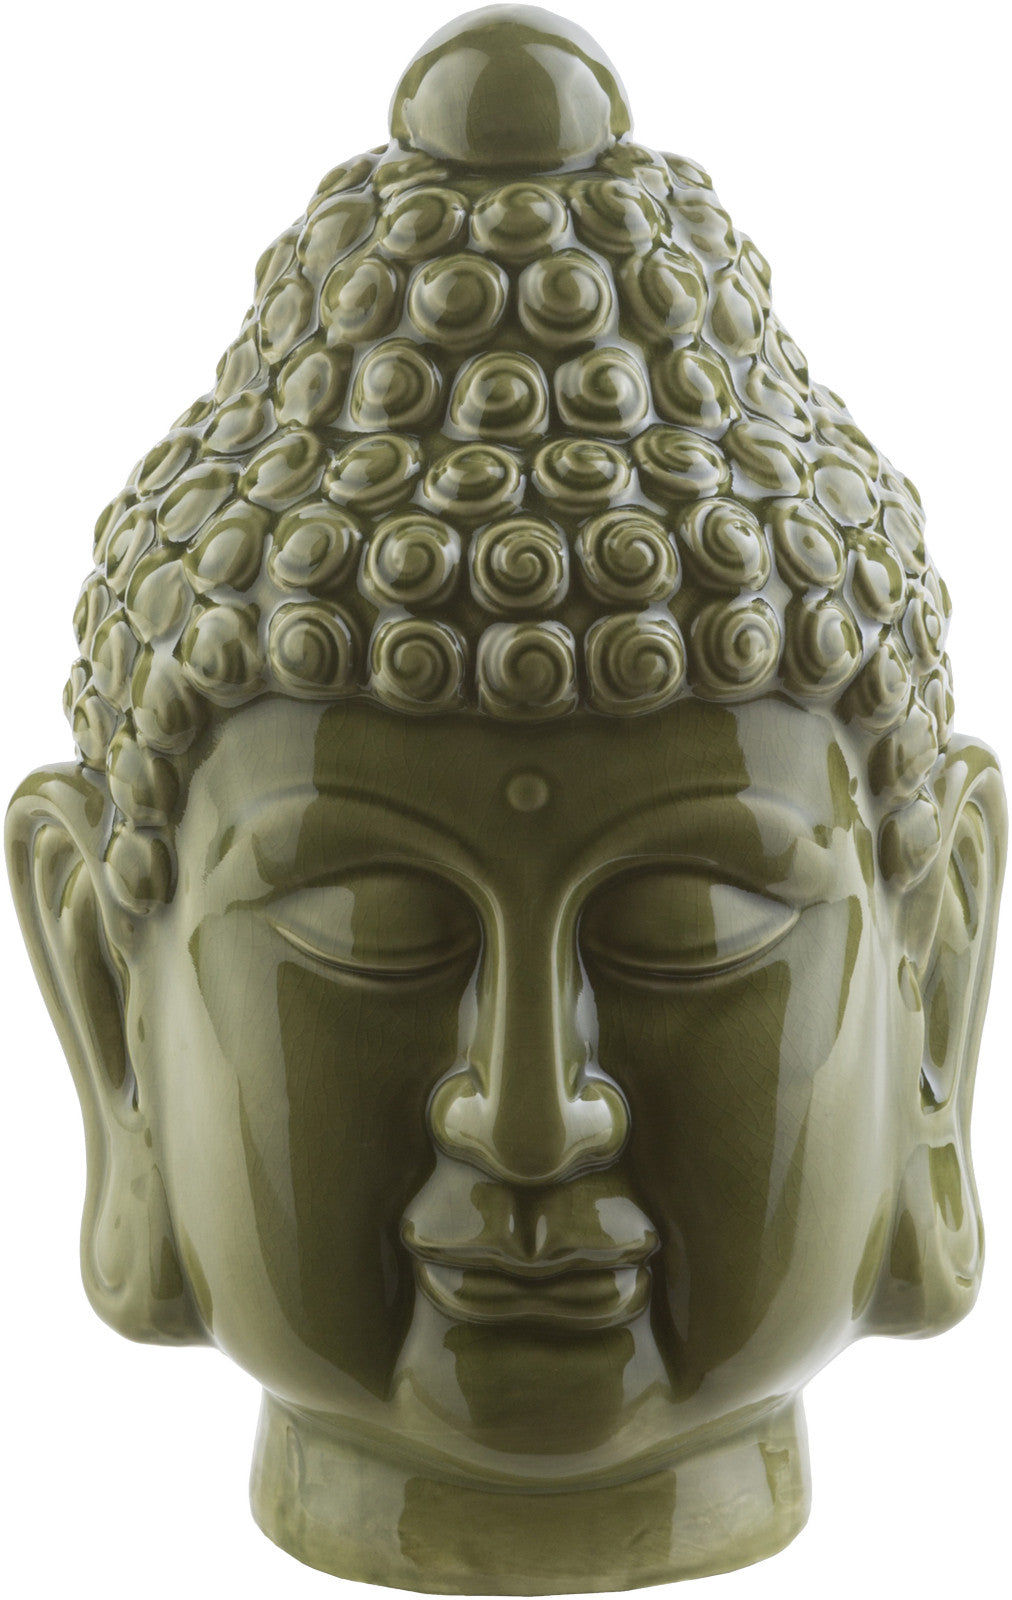 Surya Zhen ZHN-102 Buddha Buddha 8.7 X 7.5 X 13 inches